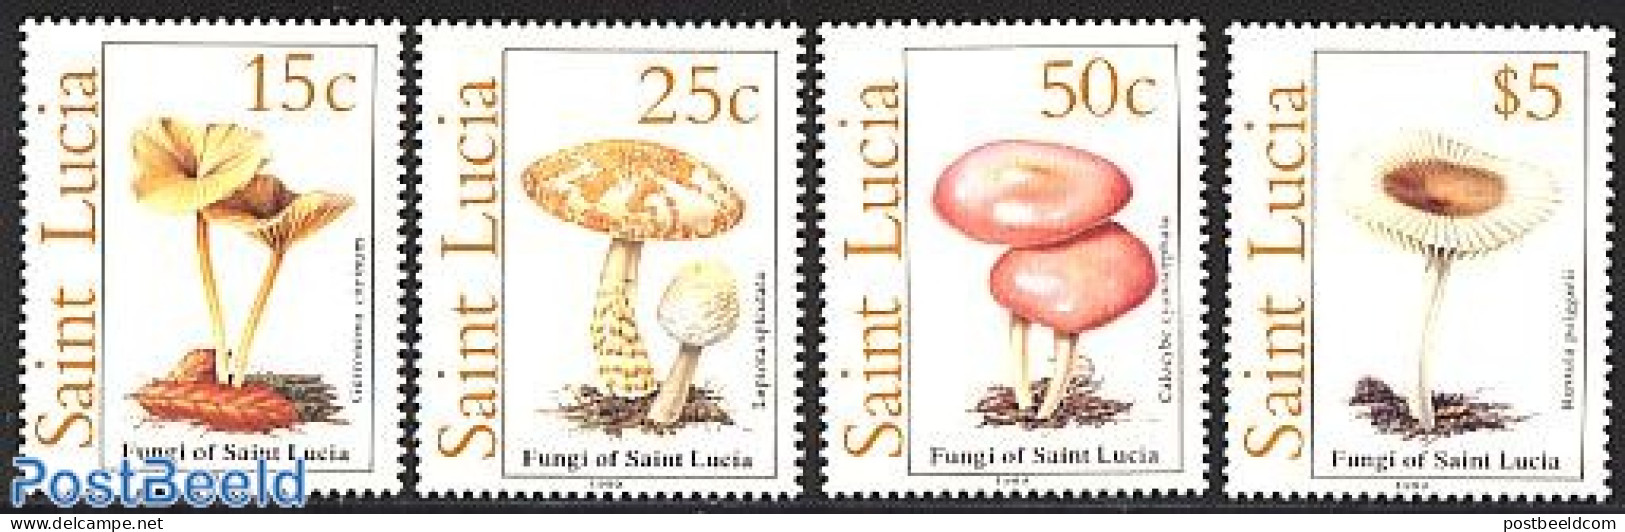 Saint Lucia 1989 Mushrooms 4v, Mint NH, Nature - Mushrooms - Champignons